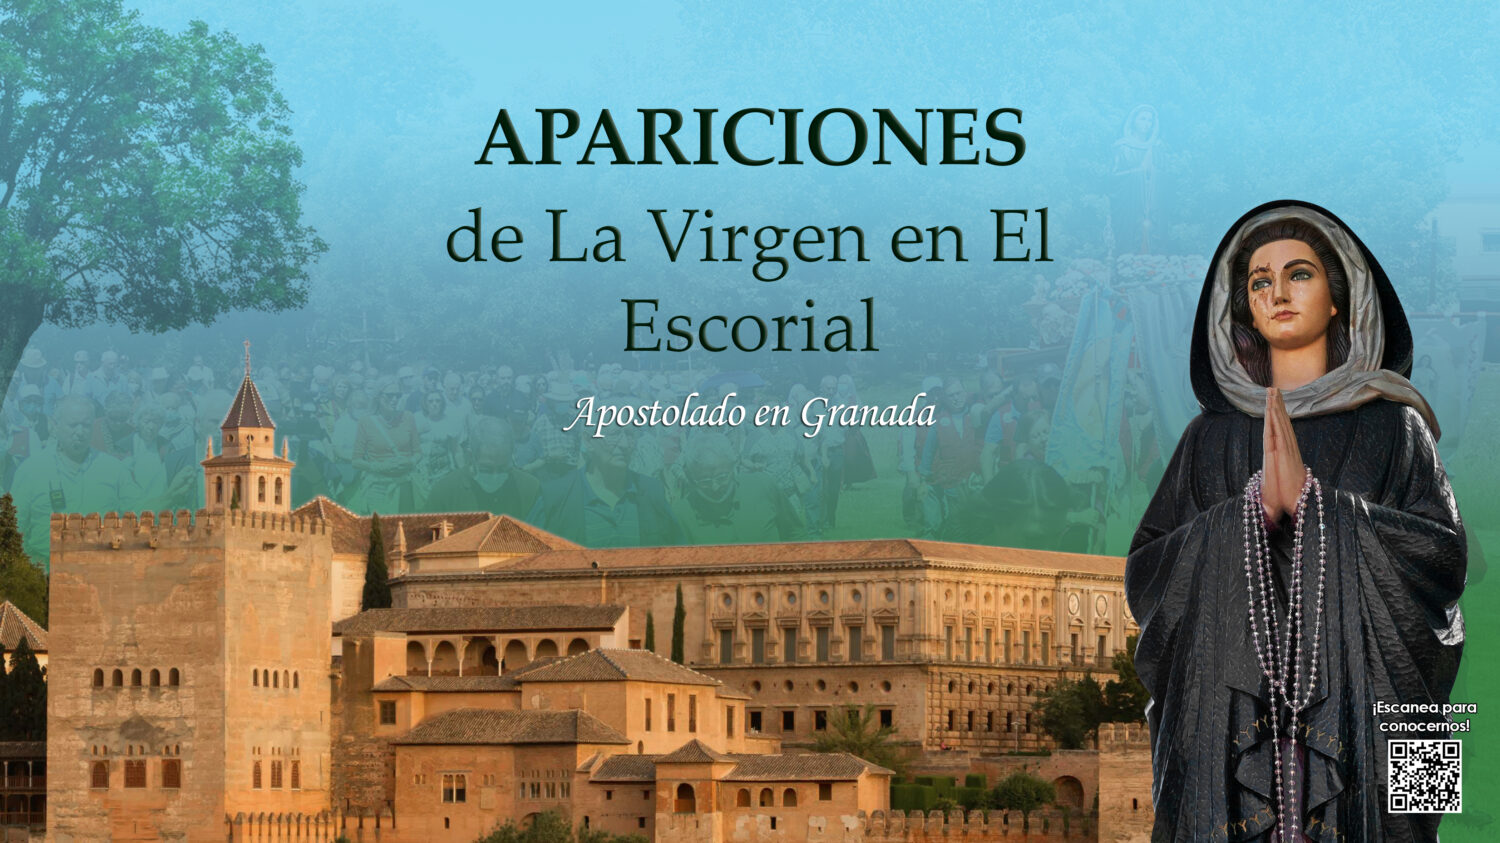 Apariciones de la Virgen en El Escorial -Apostolado en Granada